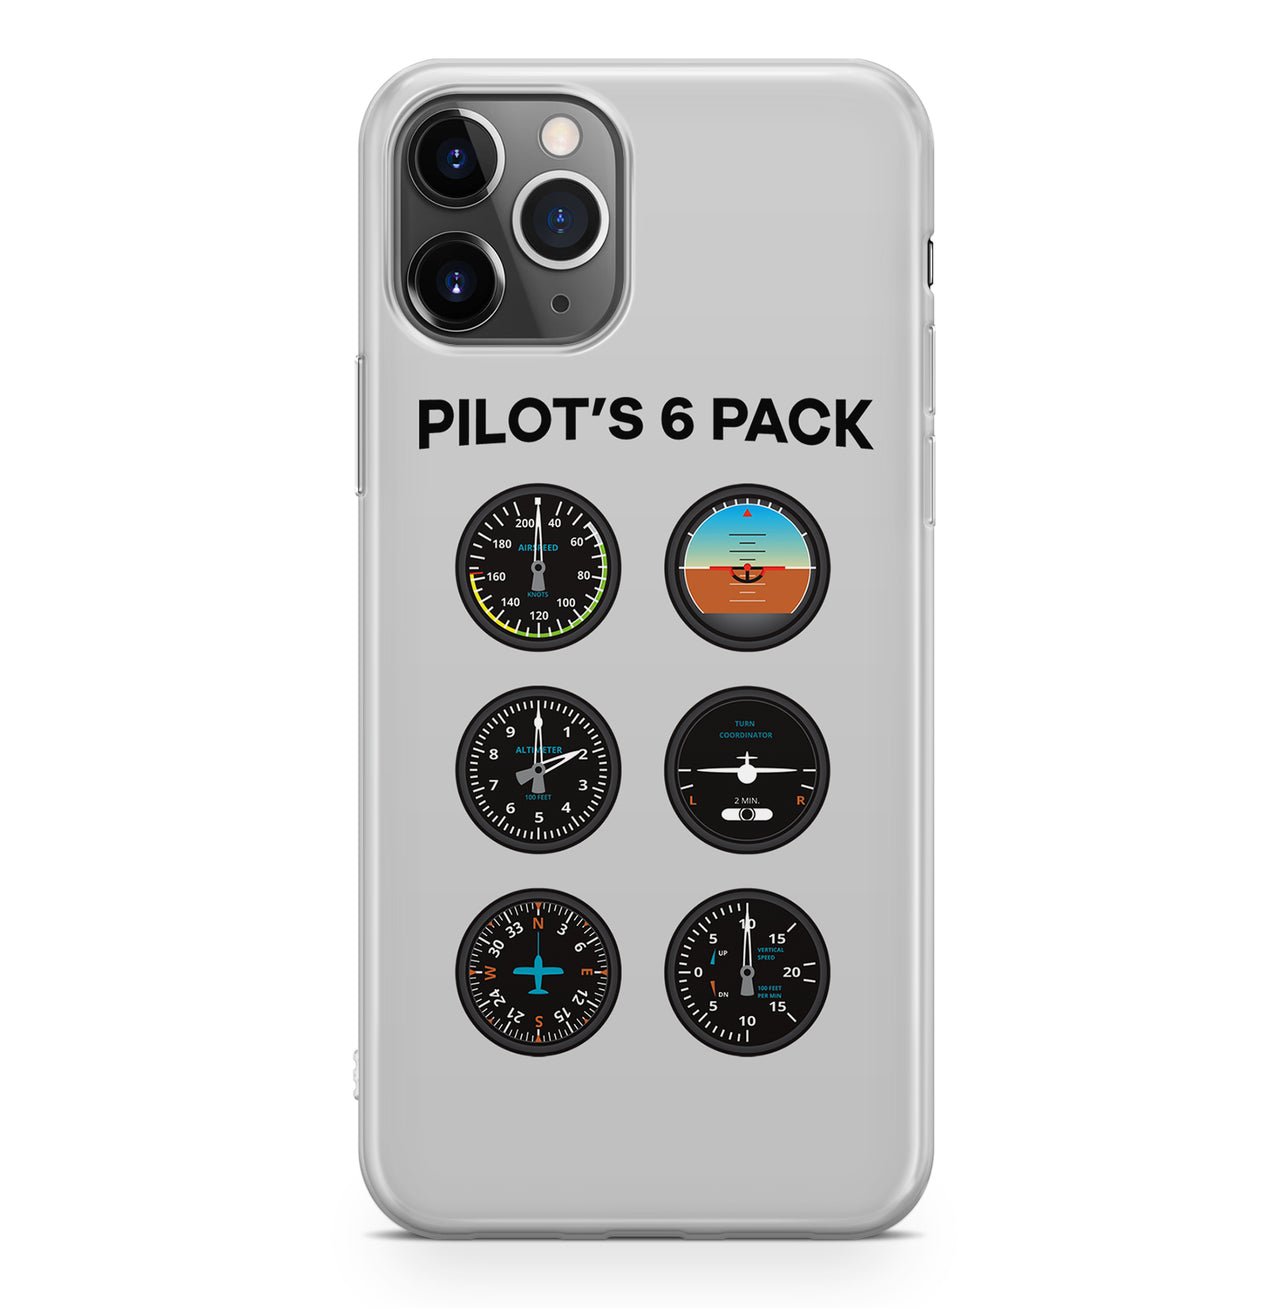 Pilot's 6 Pack Designed iPhone Cases